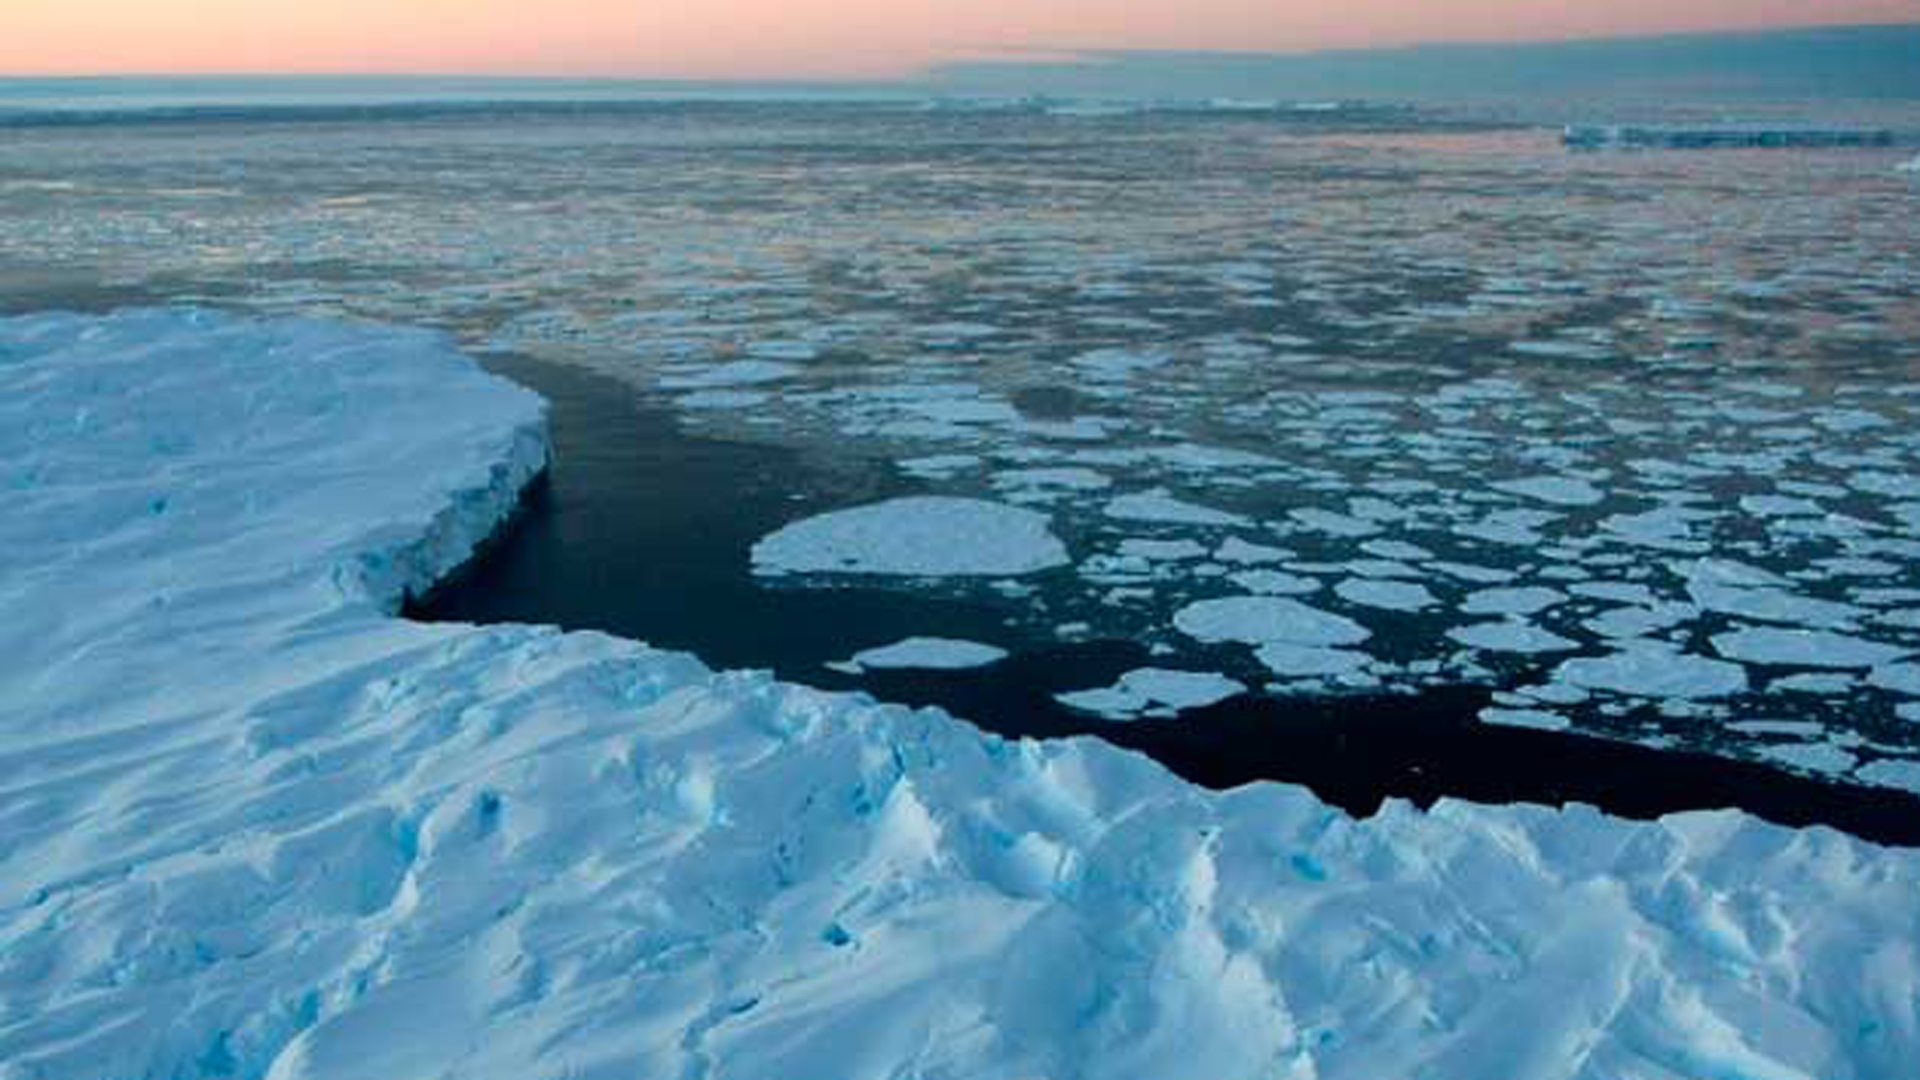 La temperatura sigue subiendo cada año y la Tierra se calienta cada vez más, lo que provoca la constante pérdida de masa de hielo en los glaciares